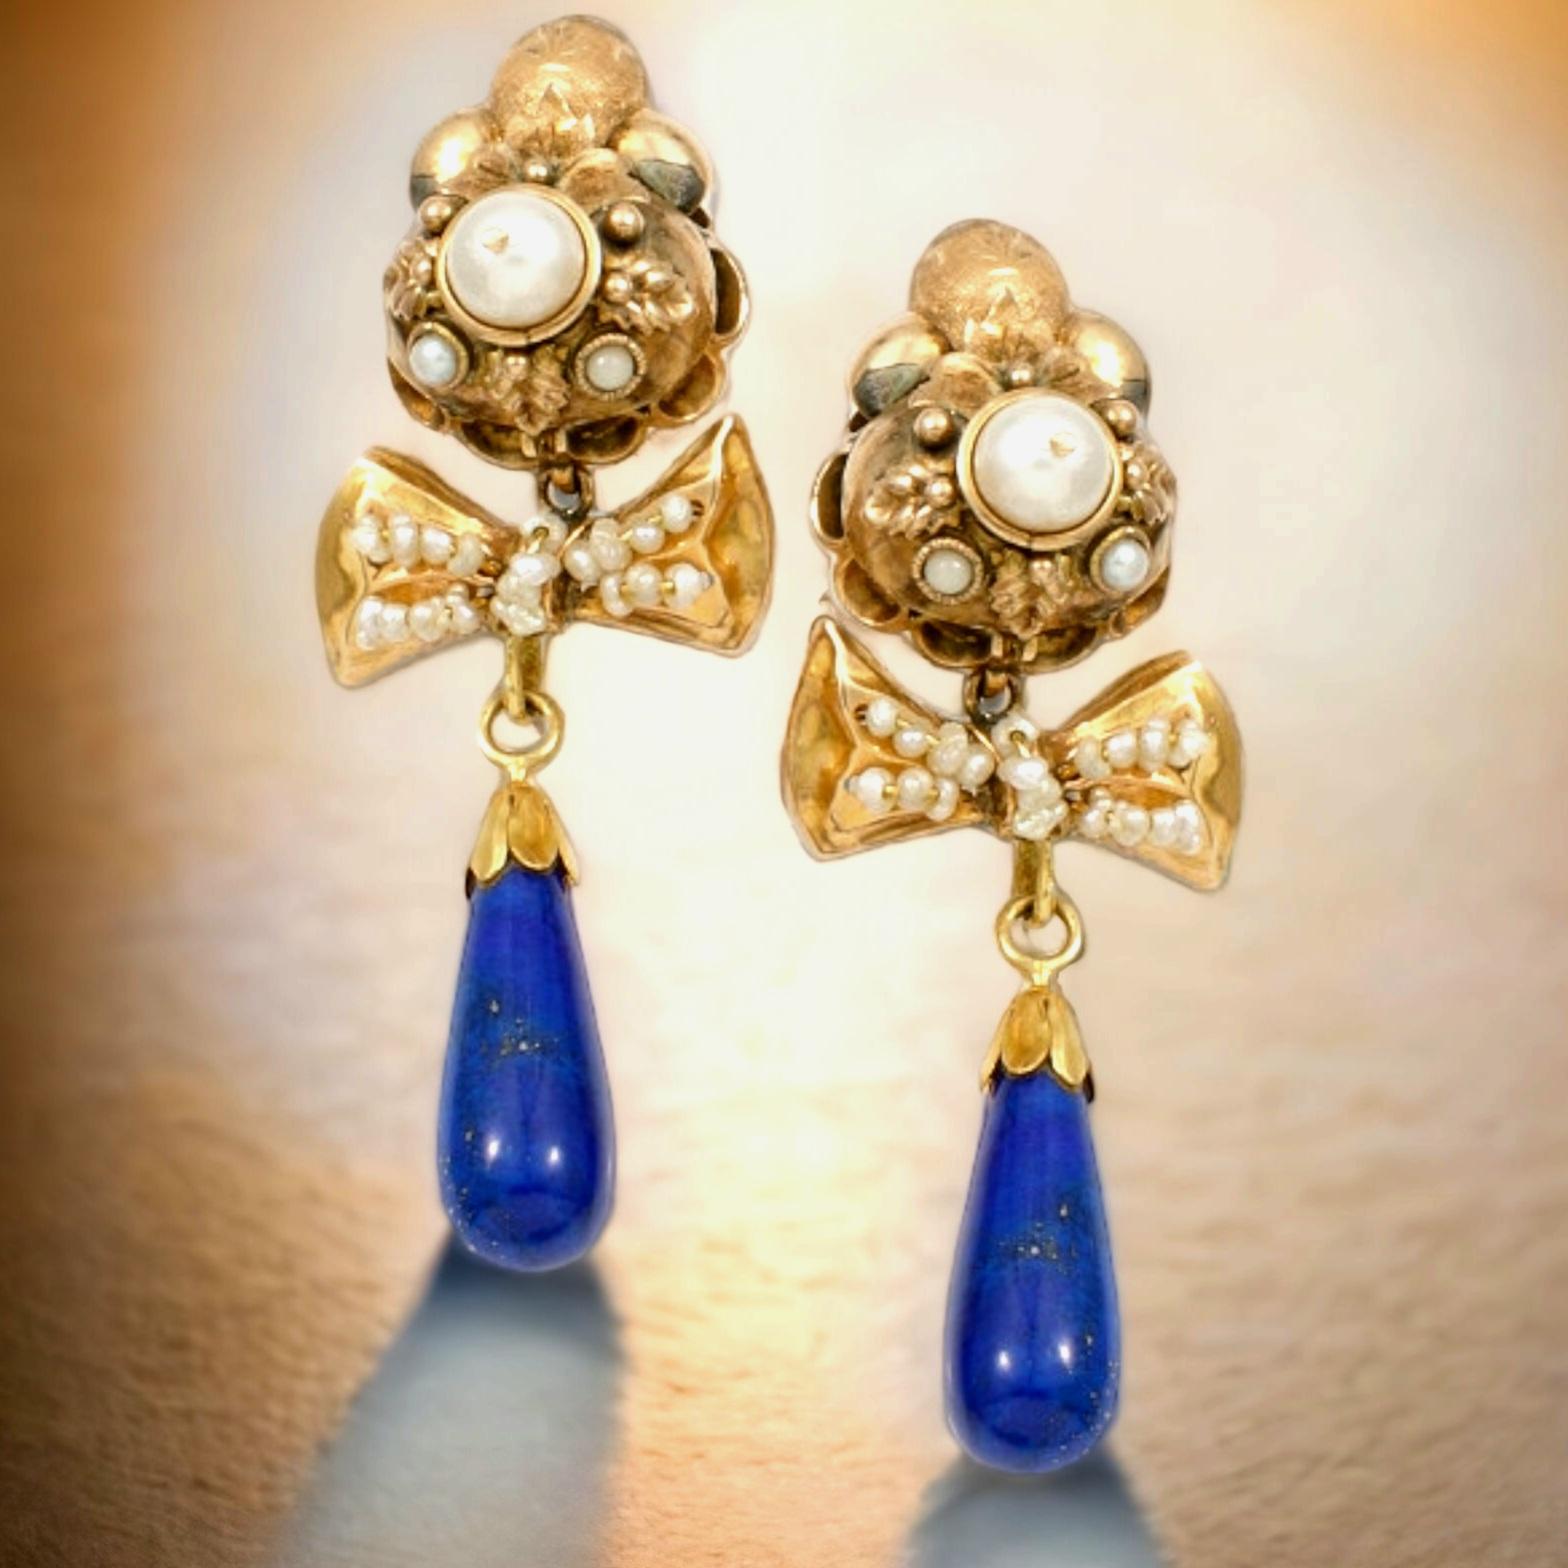 Antike Natur  Lapislazuli &  Perlen- und Saatperlen-Ohrringe mit Goldanhängern. Anfang des 19. Jahrhunderts.
Jeder Ohrring ist in drei Teile gegliedert, die sich getrennt voneinander bewegen lassen, so dass die  langer Tropfen tiefblau  lila